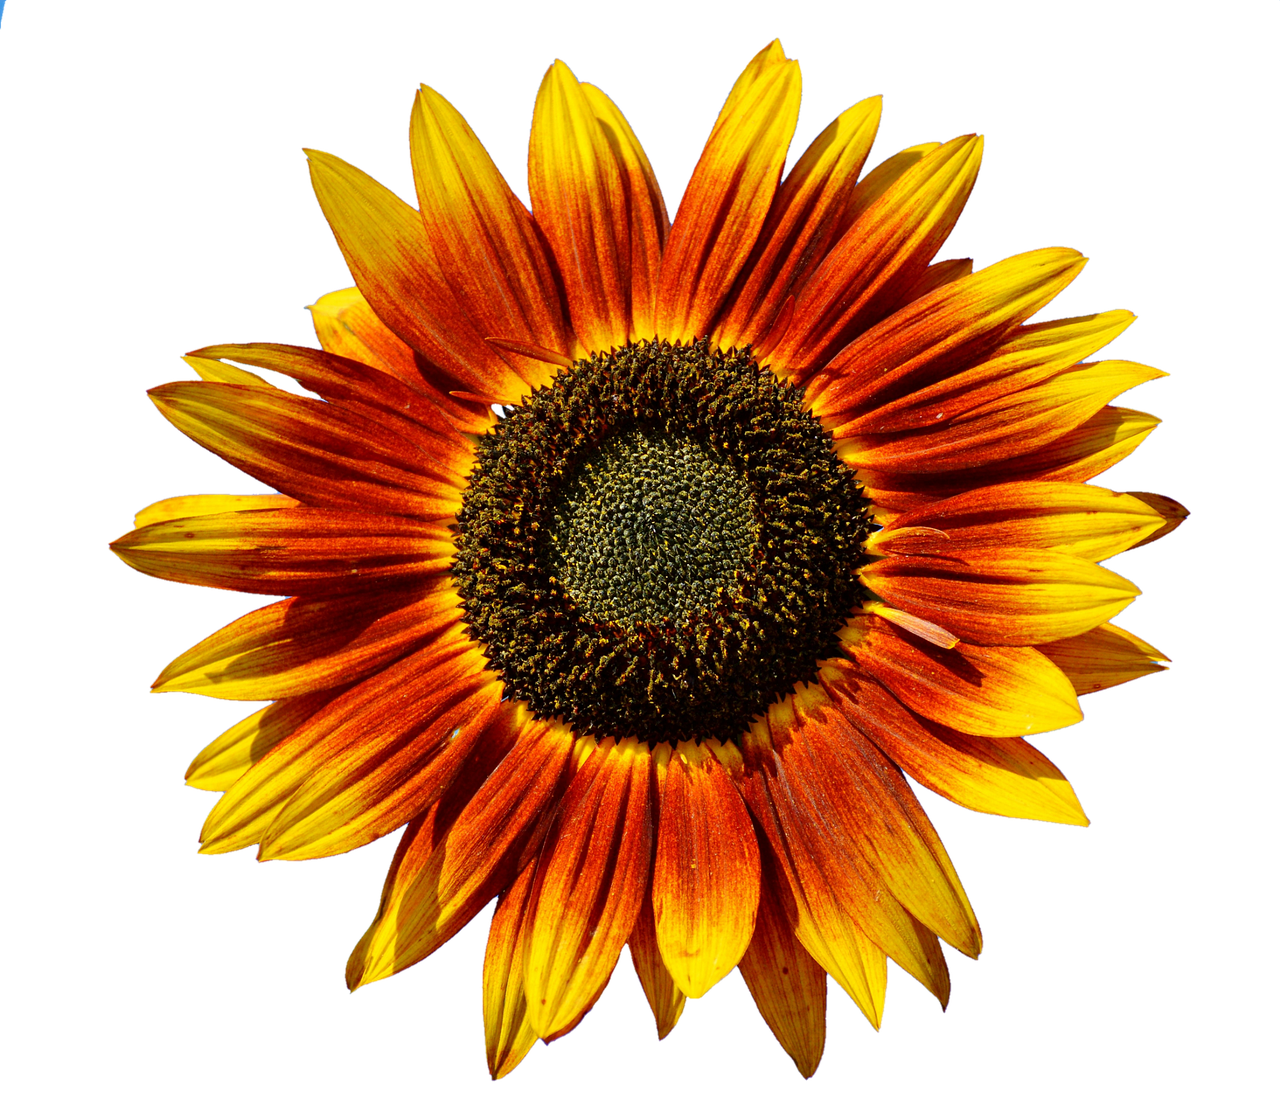 Vibrant Sunflower Against Black Background.jpg